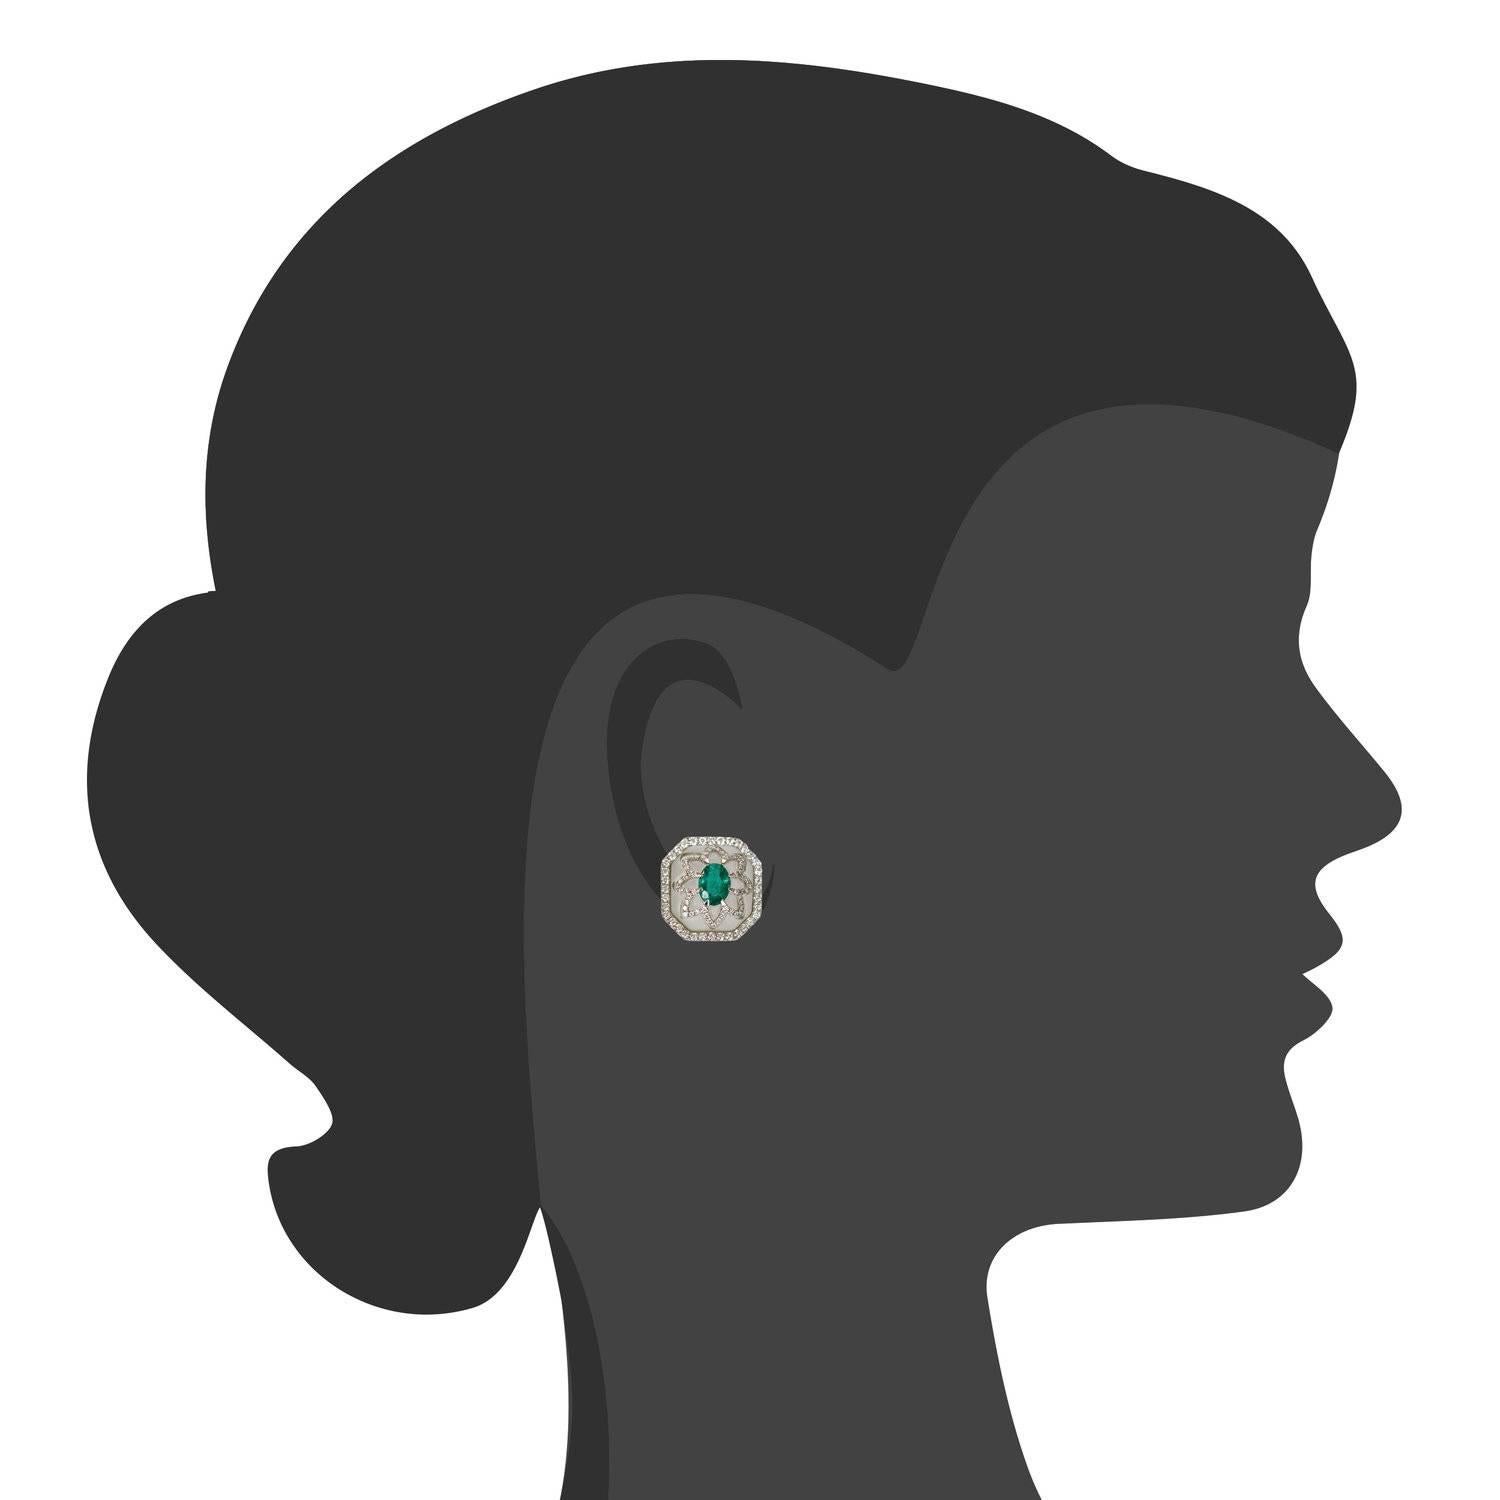 Die Bergkristall- und Smaragd-Ohrringe von Ri Noor setzen durch den Mix von Materialien und Formen ein besonderes Statement, das jedes Outfit aufwertet, ganz gleich zu welchem Anlass. Die dynamischen Ohrringe bestehen aus einem mattierten